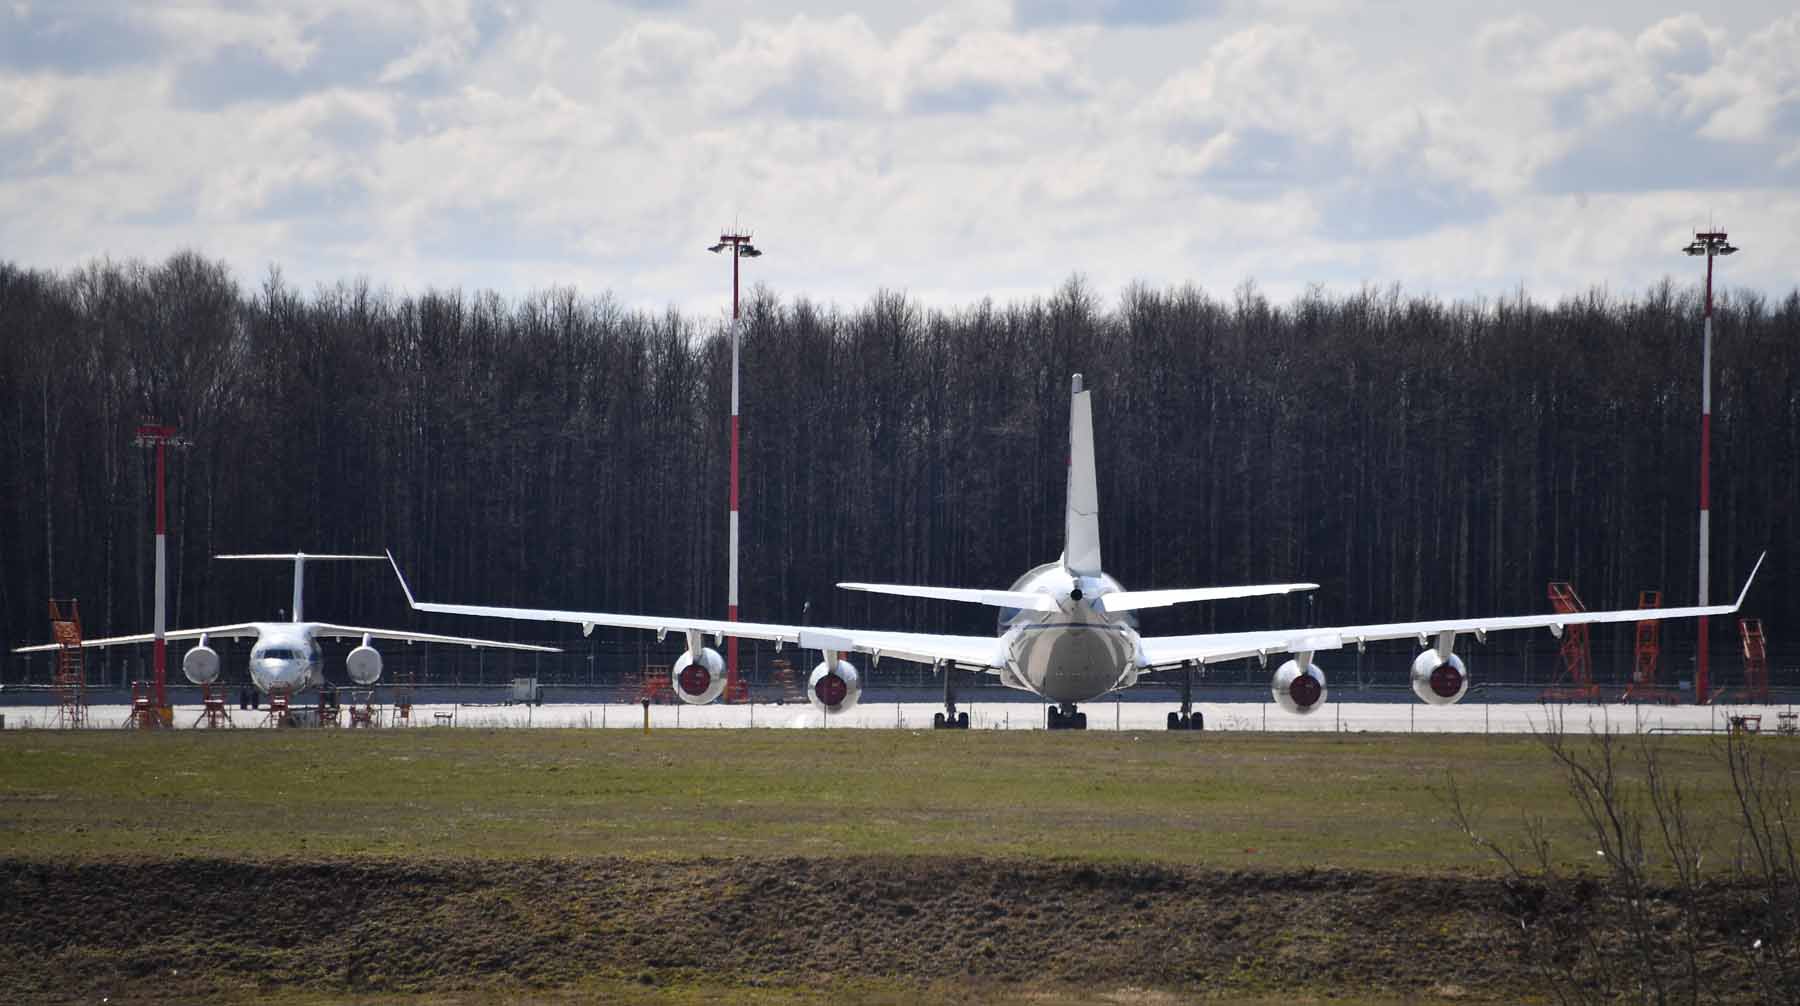 Dailystorm - Появились снимки из выкатившегося за пределы взлетной полосы самолета во Внуково